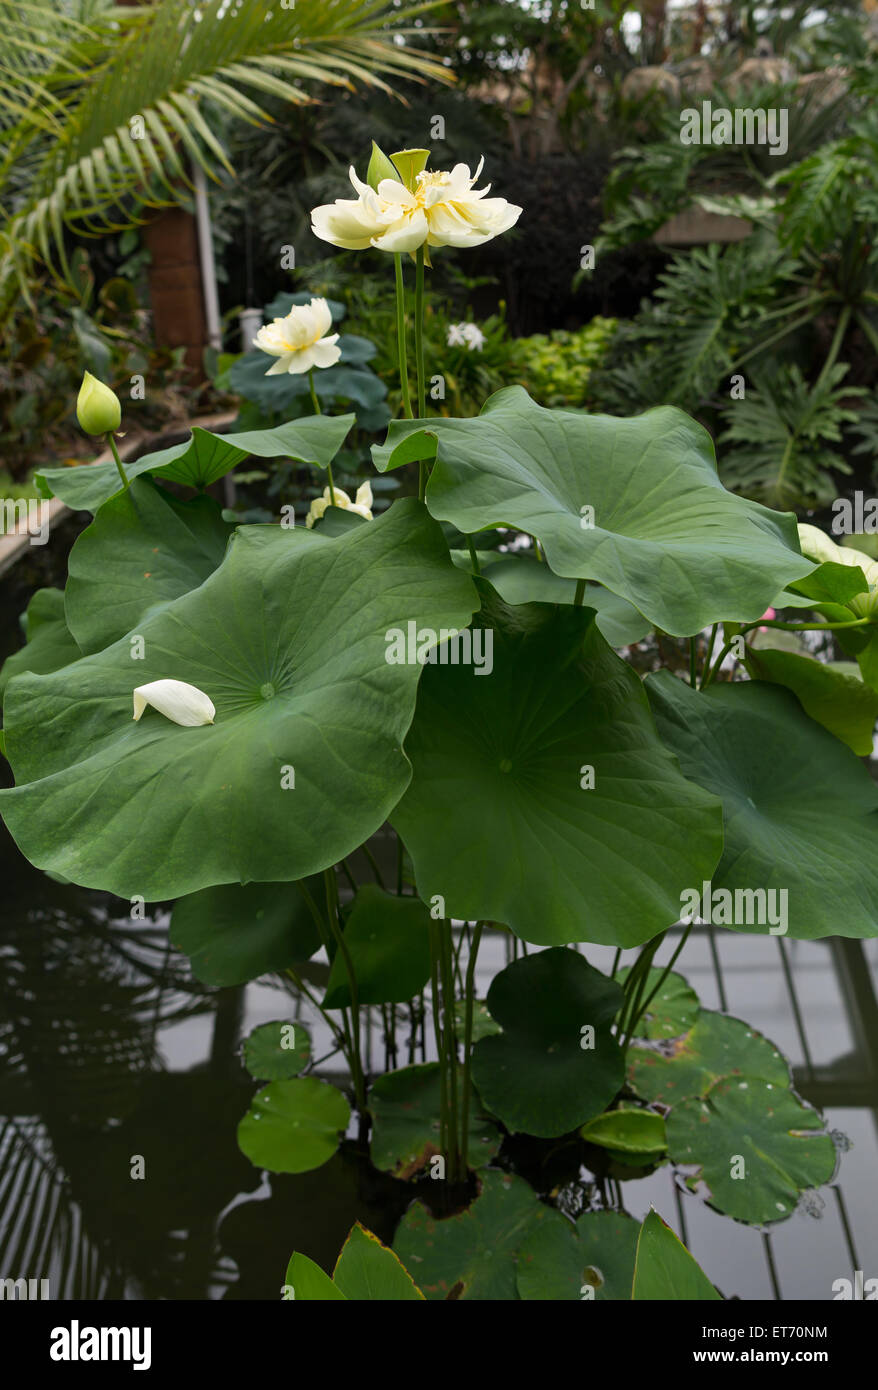 Jardins botaniques royaux de Kew, Princess of Wales conservatory, fleur de lotus - Londres, Royaume-Uni, Europe Banque D'Images